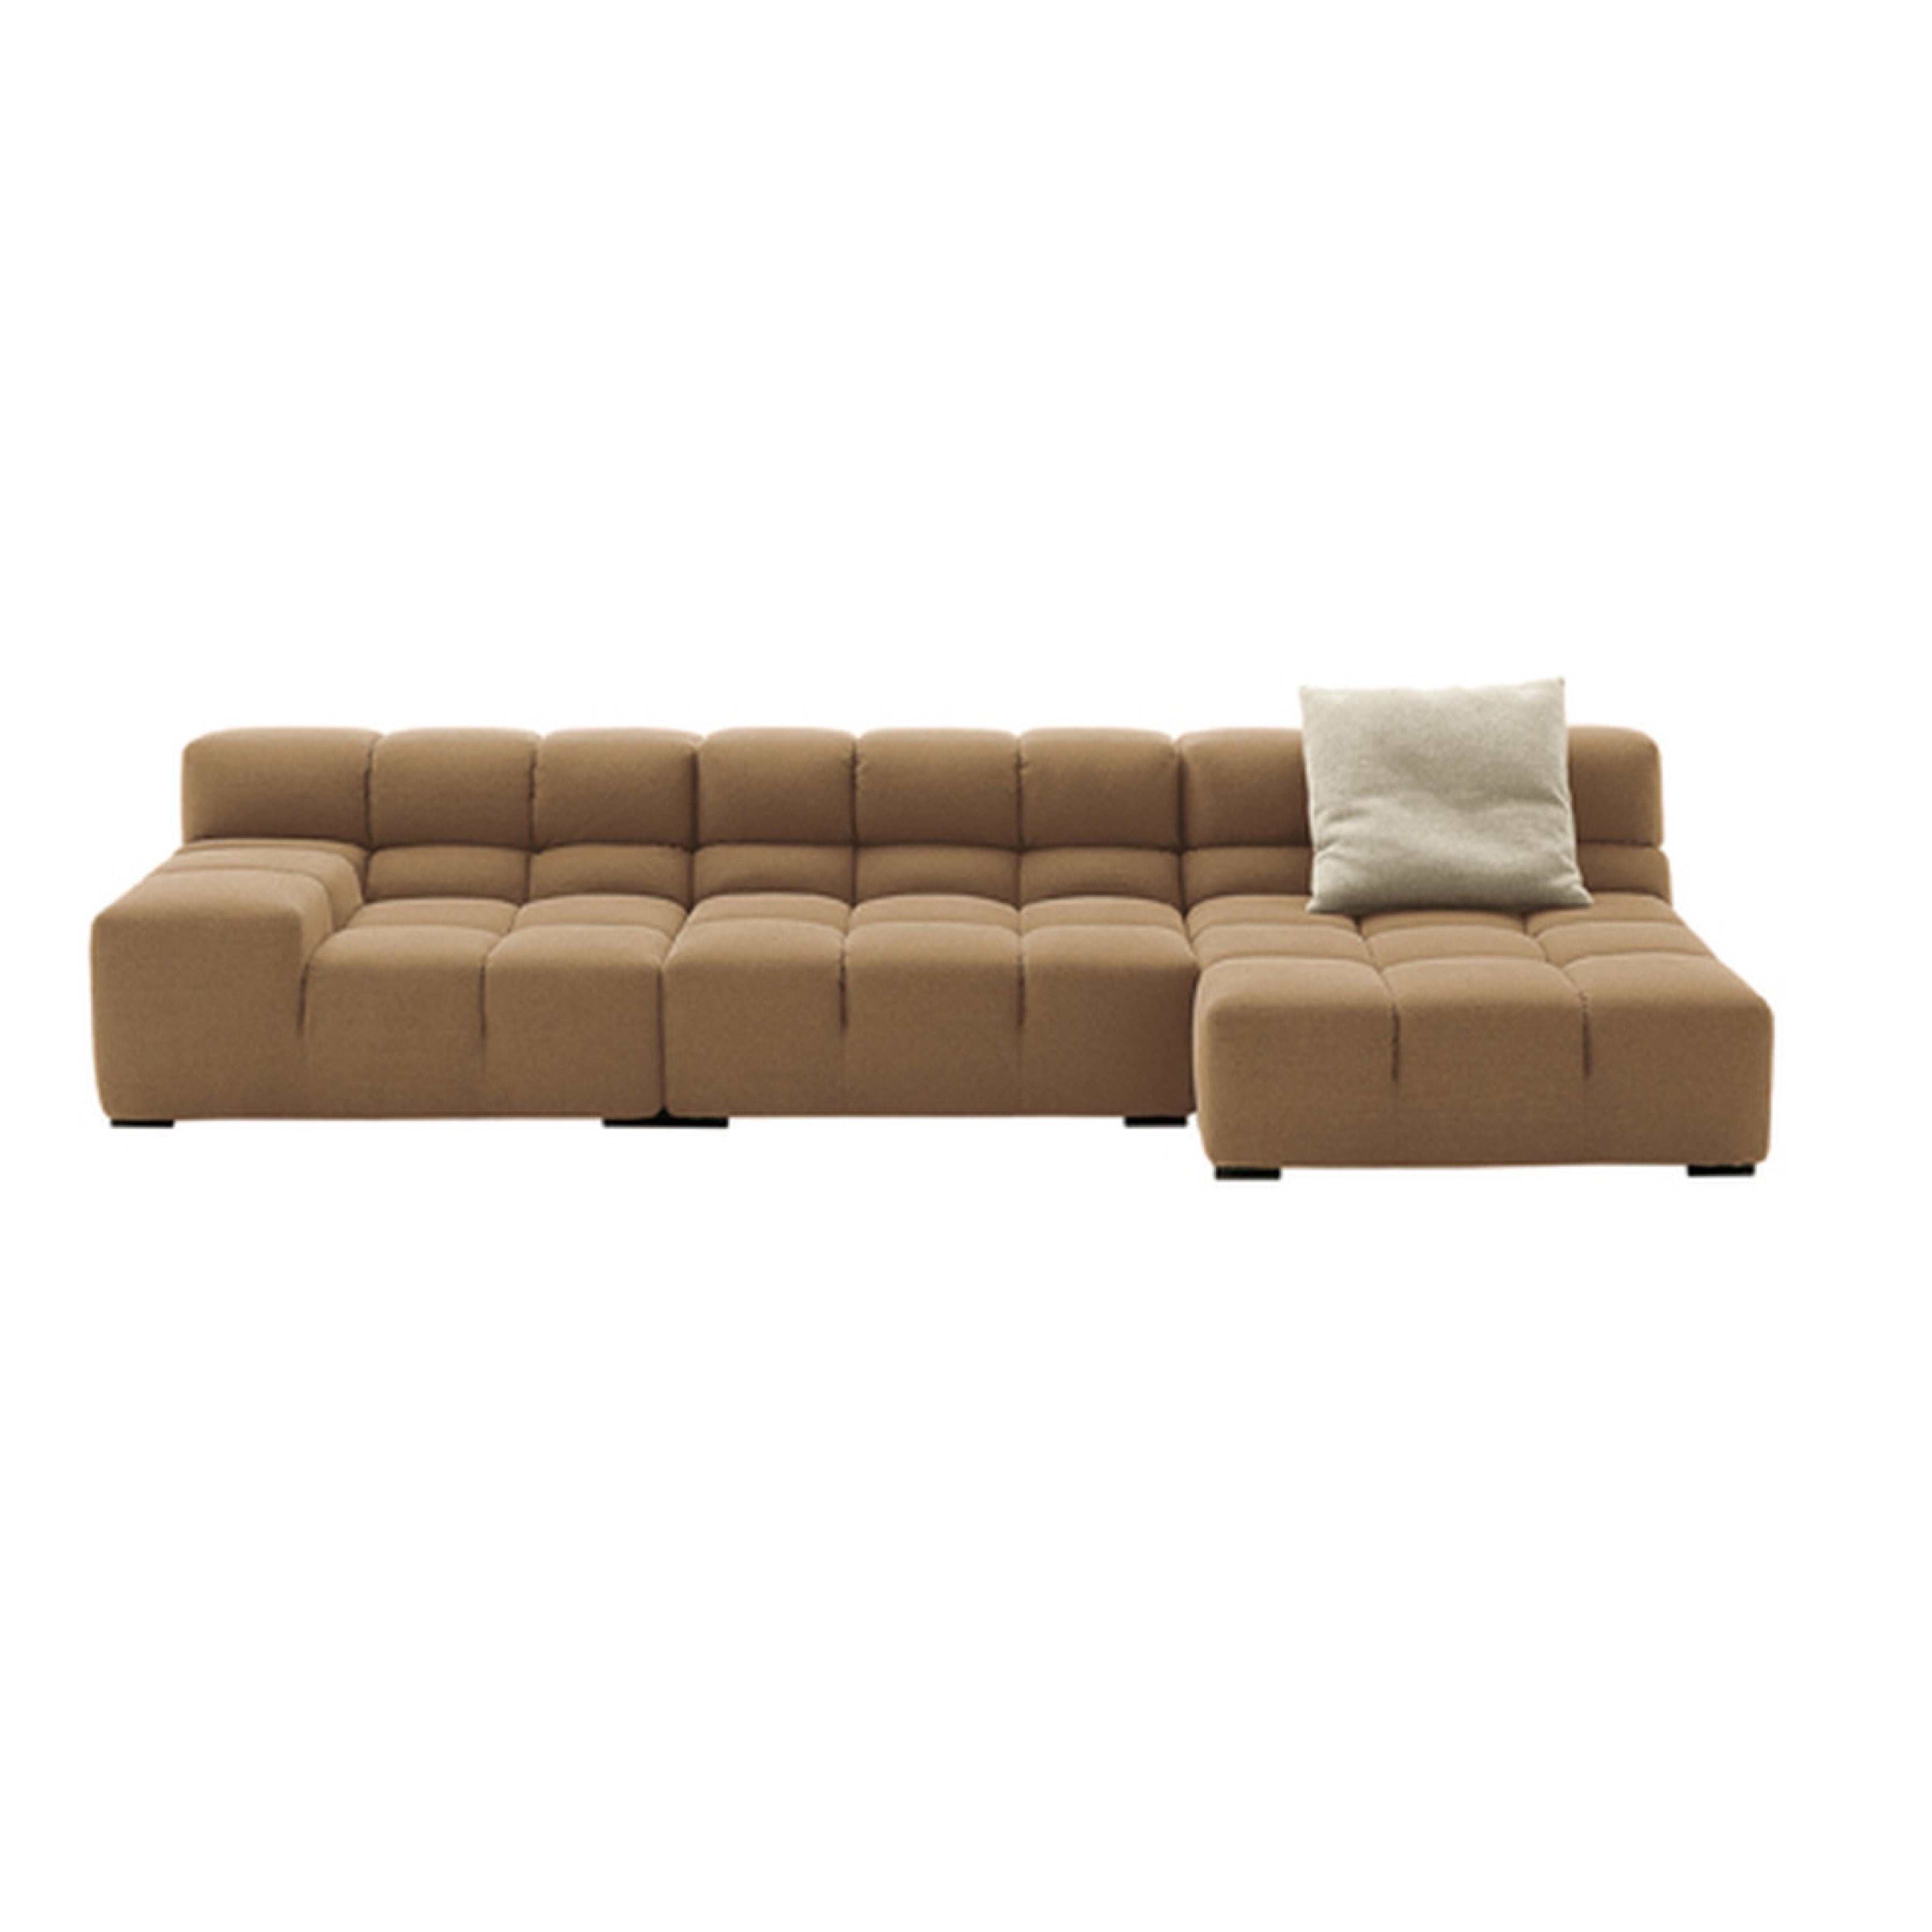 TR50046 Tufty sofa